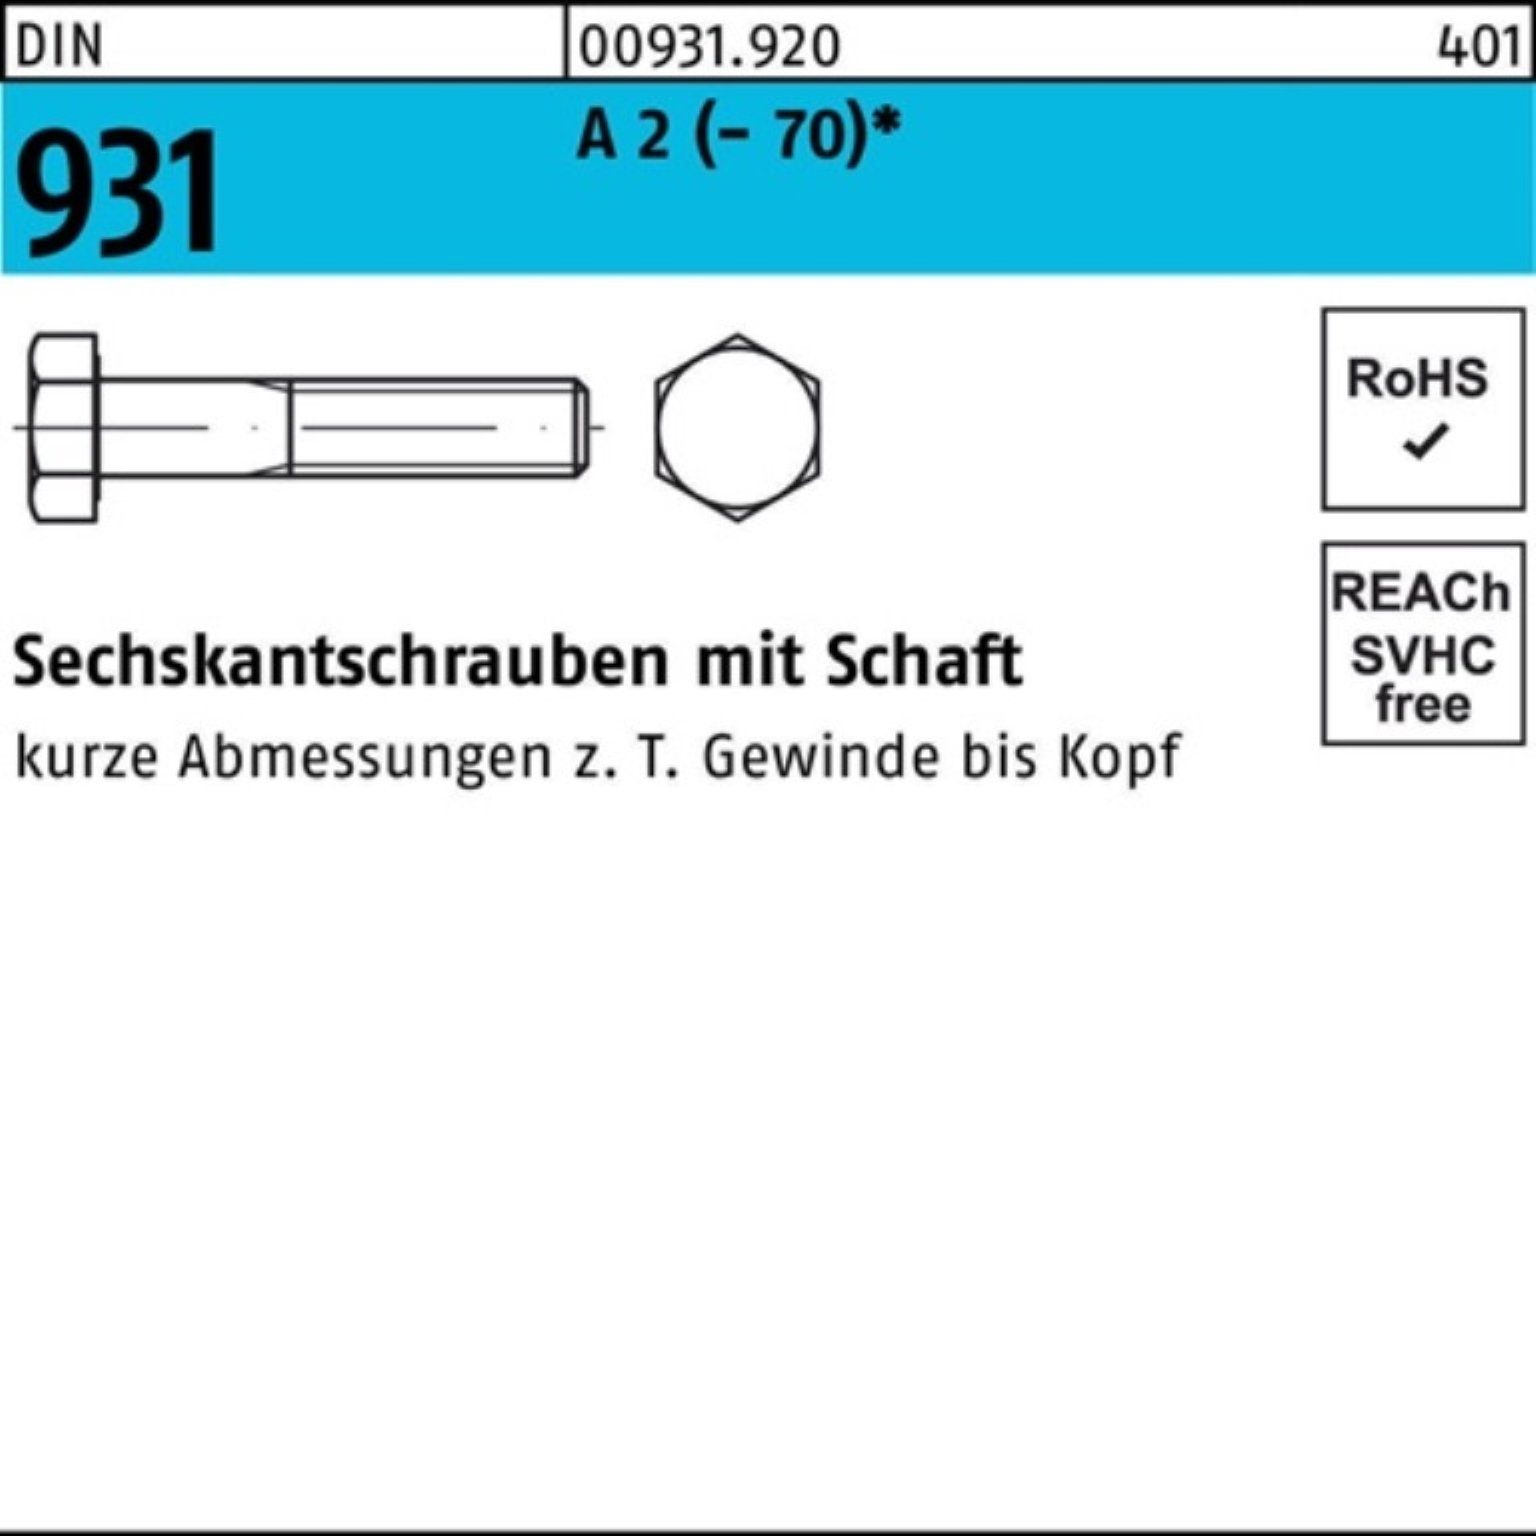 (70) 2 DIN Pack Schaft 1 150 M36x Stü Reyher Sechskantschraube 931 100er A Sechskantschraube